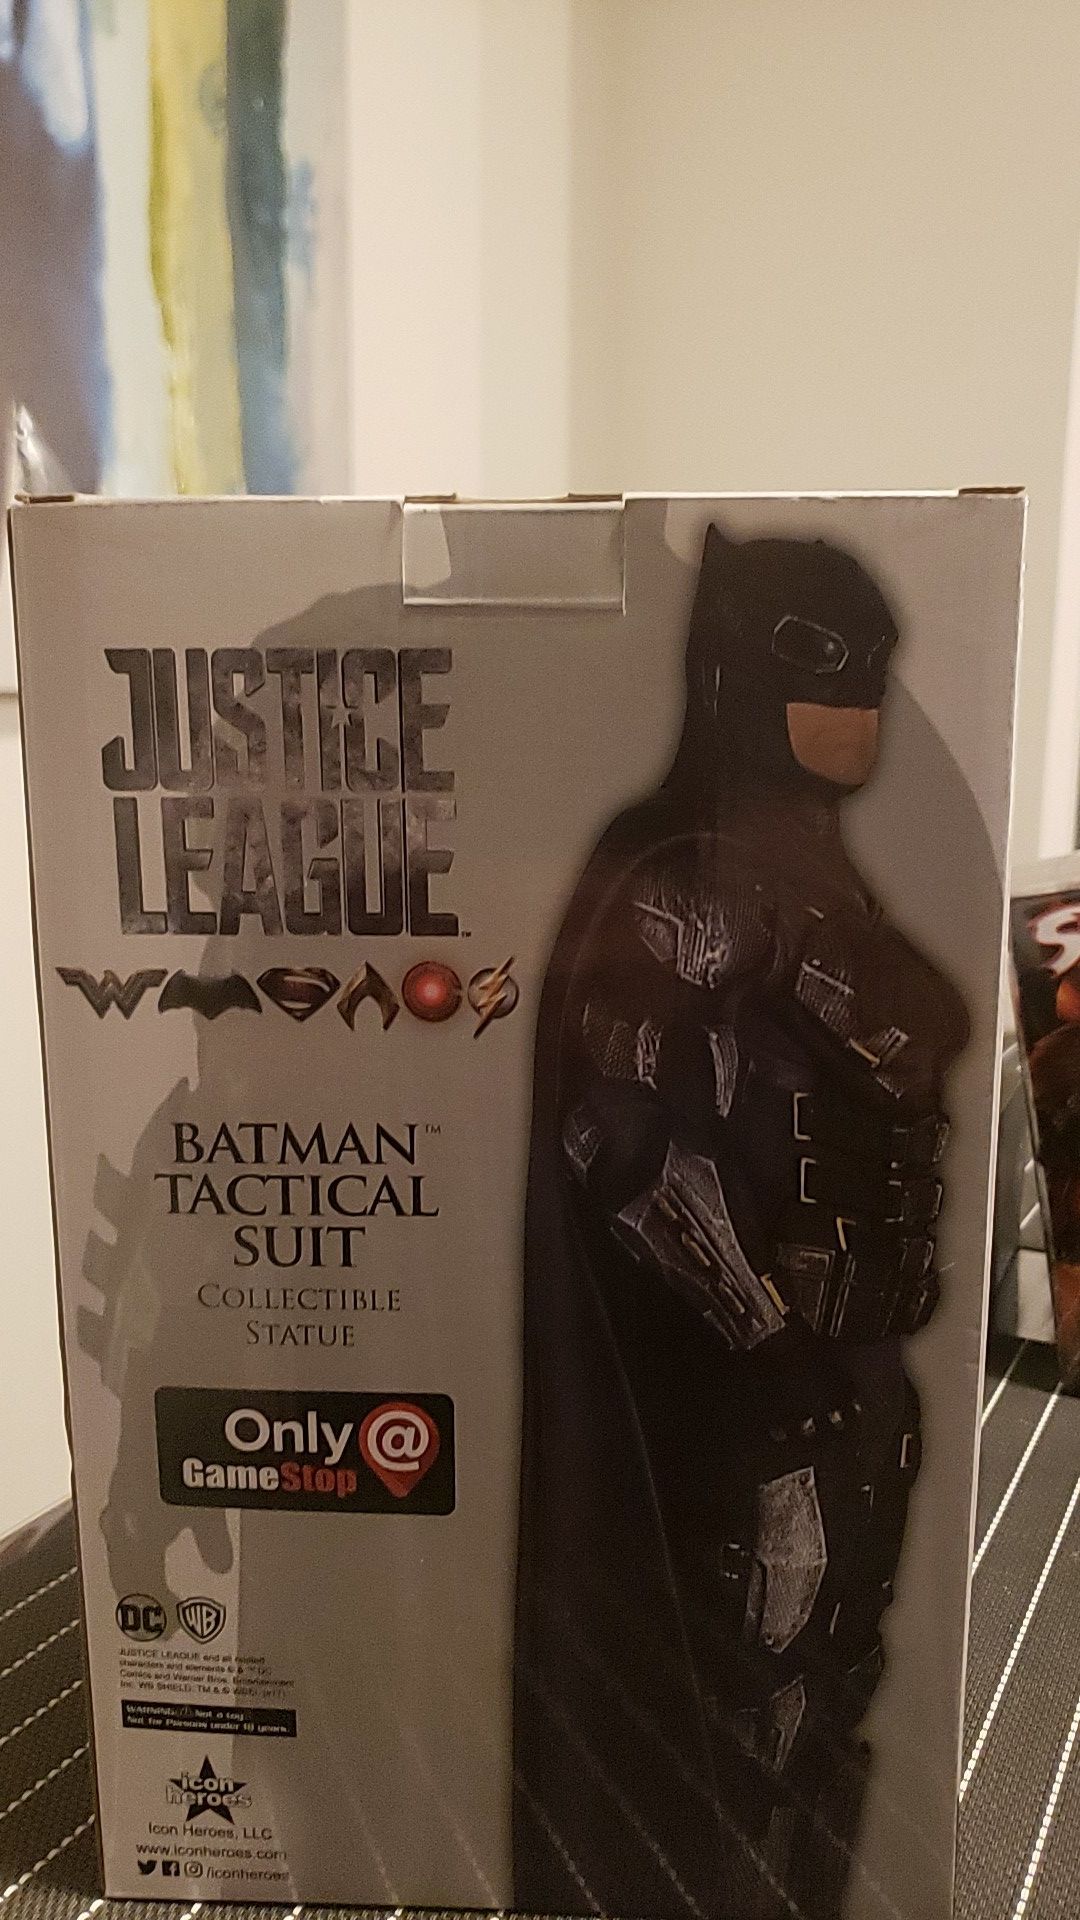 Only@GameStop - Batman Tactical Suit